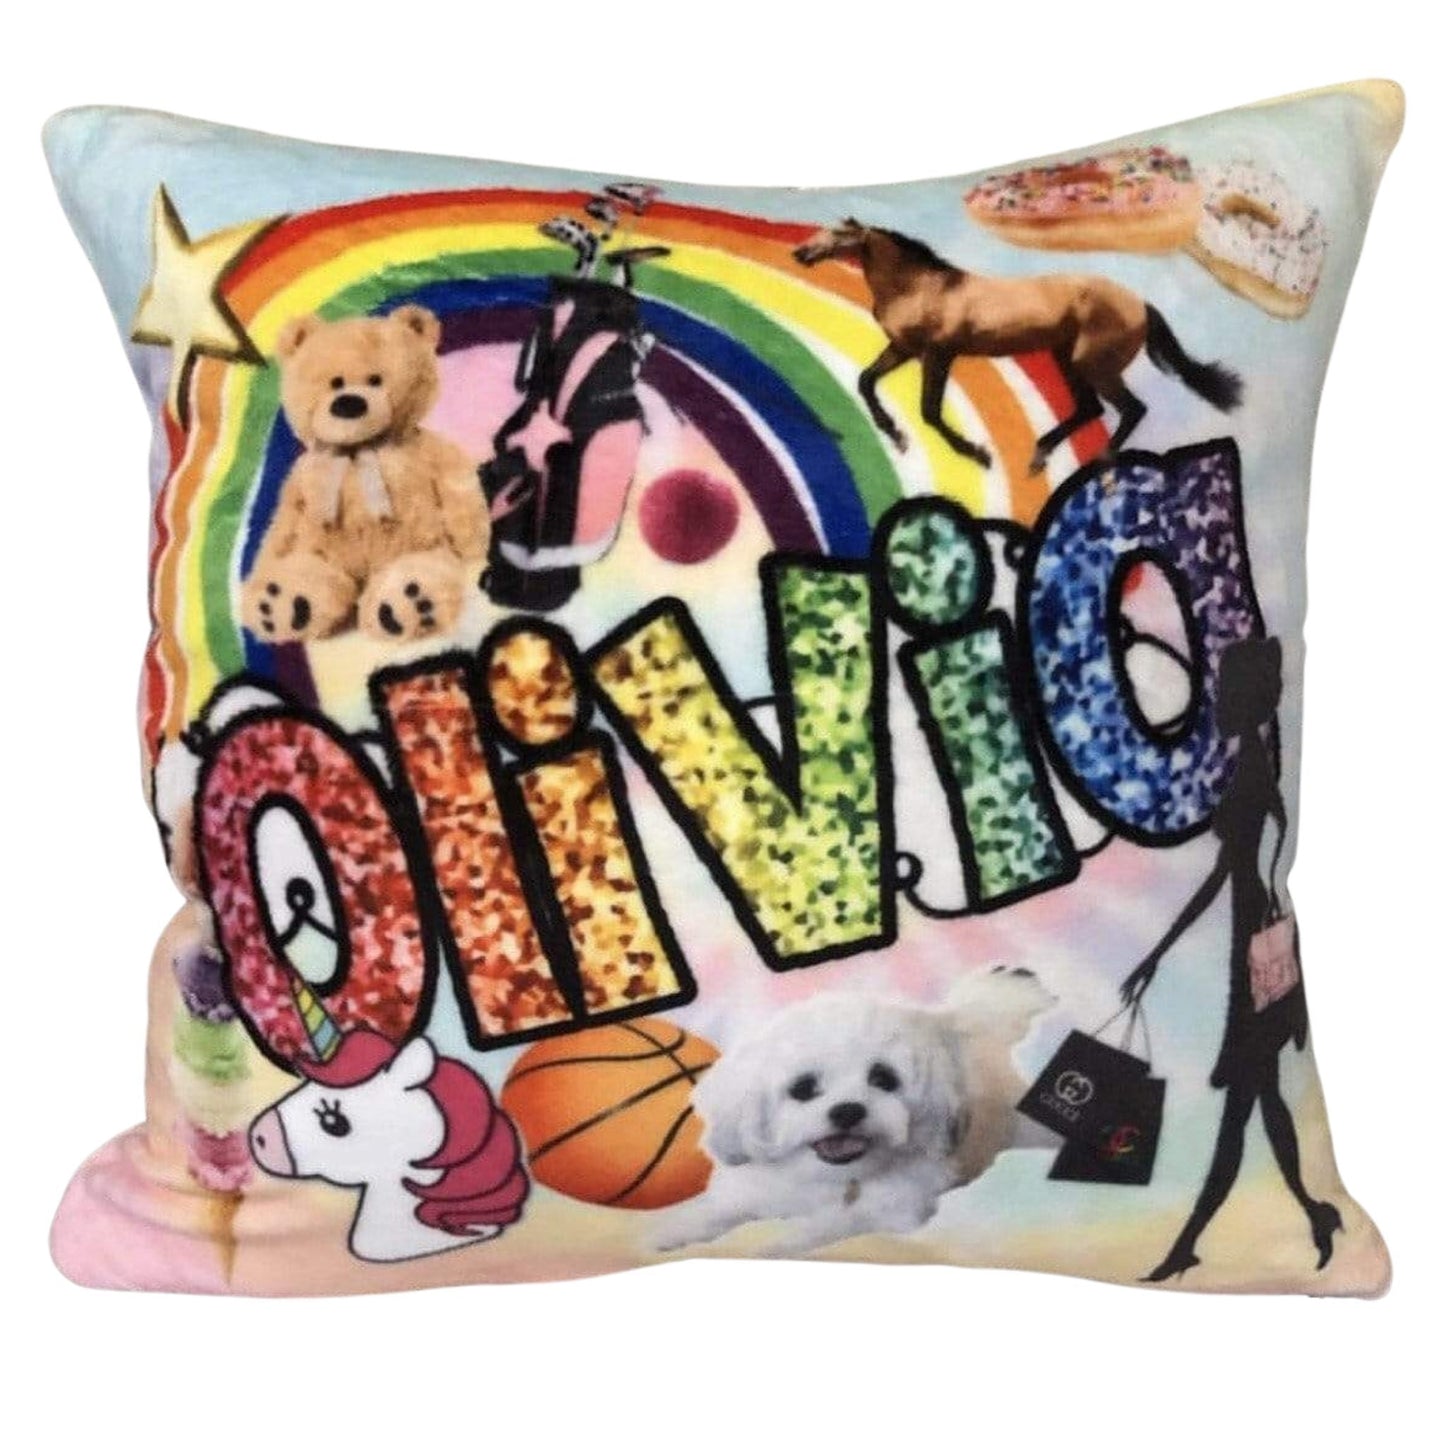 Favorite Things Custom Pillows - a Spirit Animal -